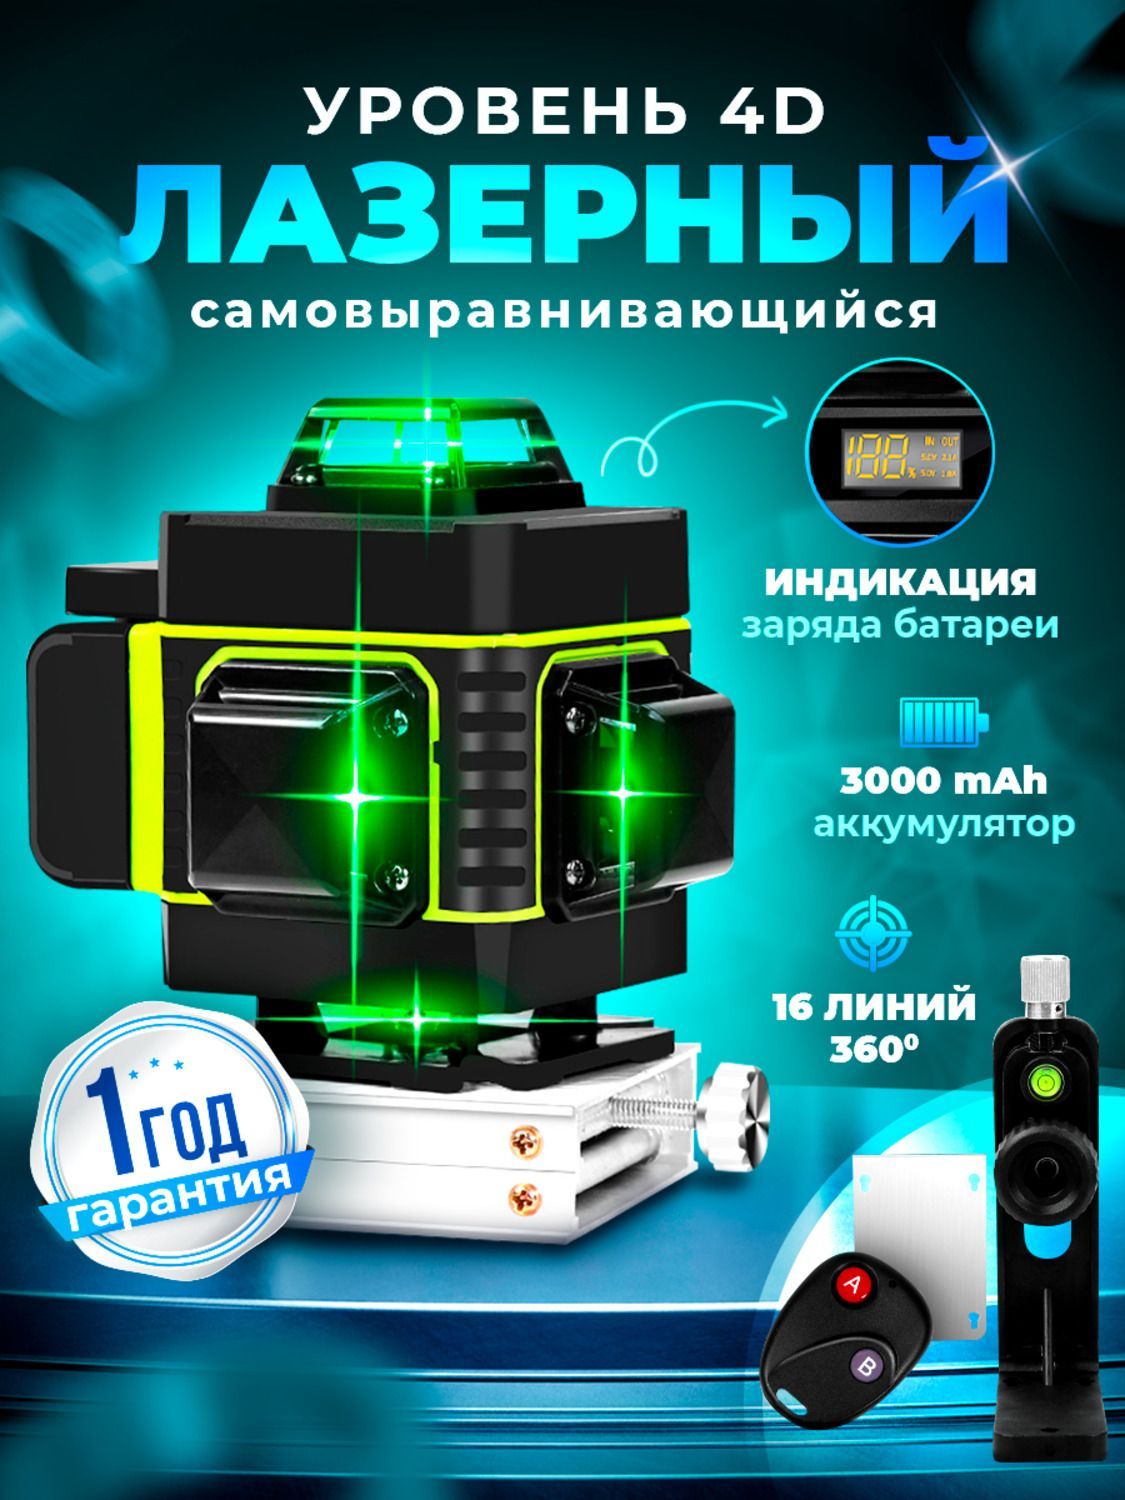 Уровень лазерный ADA Cube Mini Green Professional Edition